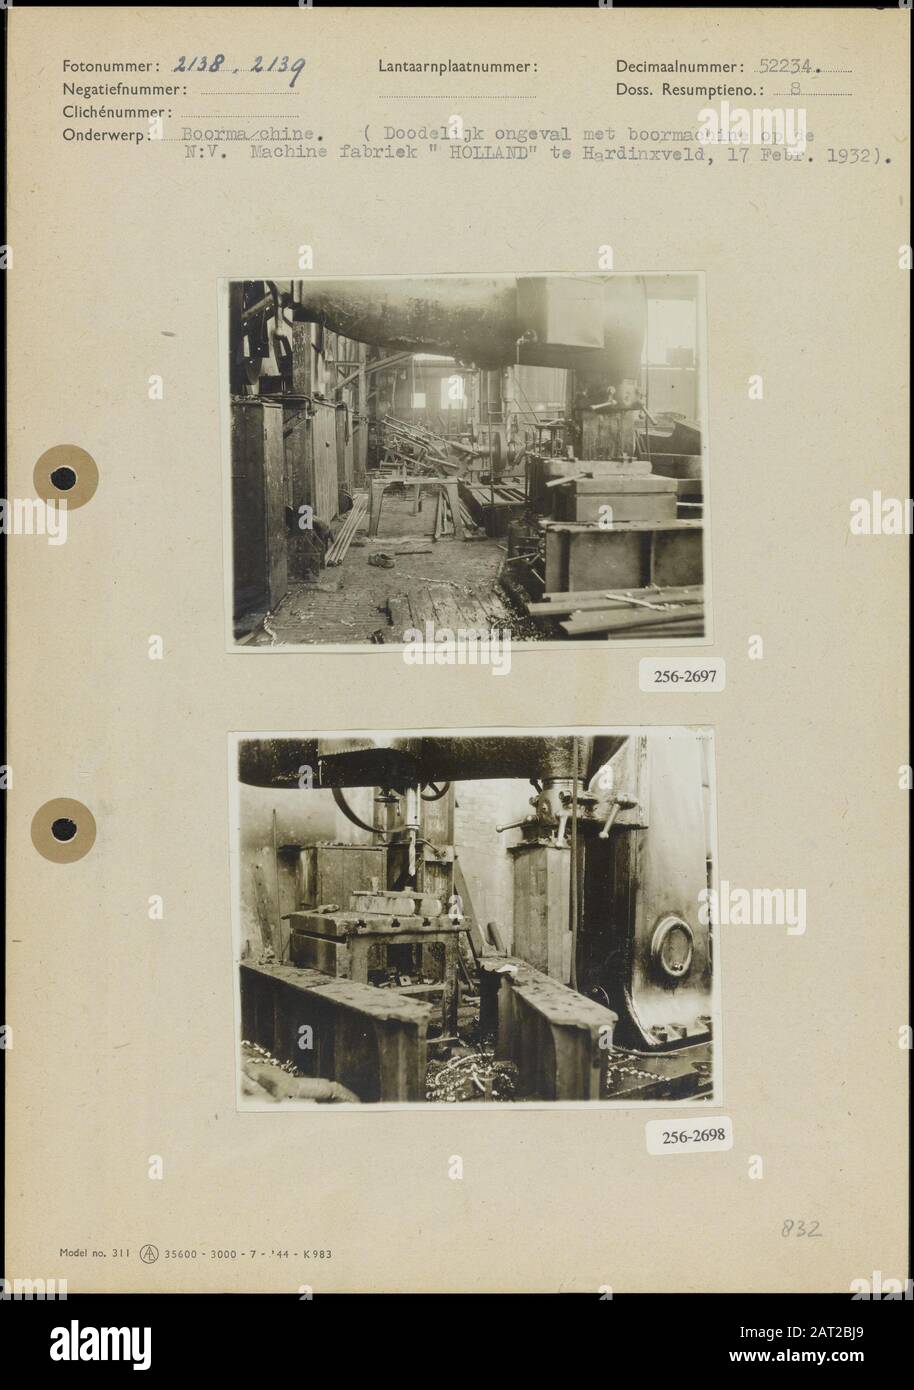 Foto 1: Tödlicher Unfall mit Bohrmaschine im NV Machinefabriek Holland in  Hardinxveld am 17. Februar 1932 (8,5 x 11 cm; unbekannt) Foto 2: Tödlicher  Unfall mit Bohrer im NV Machinefabriek Holland in